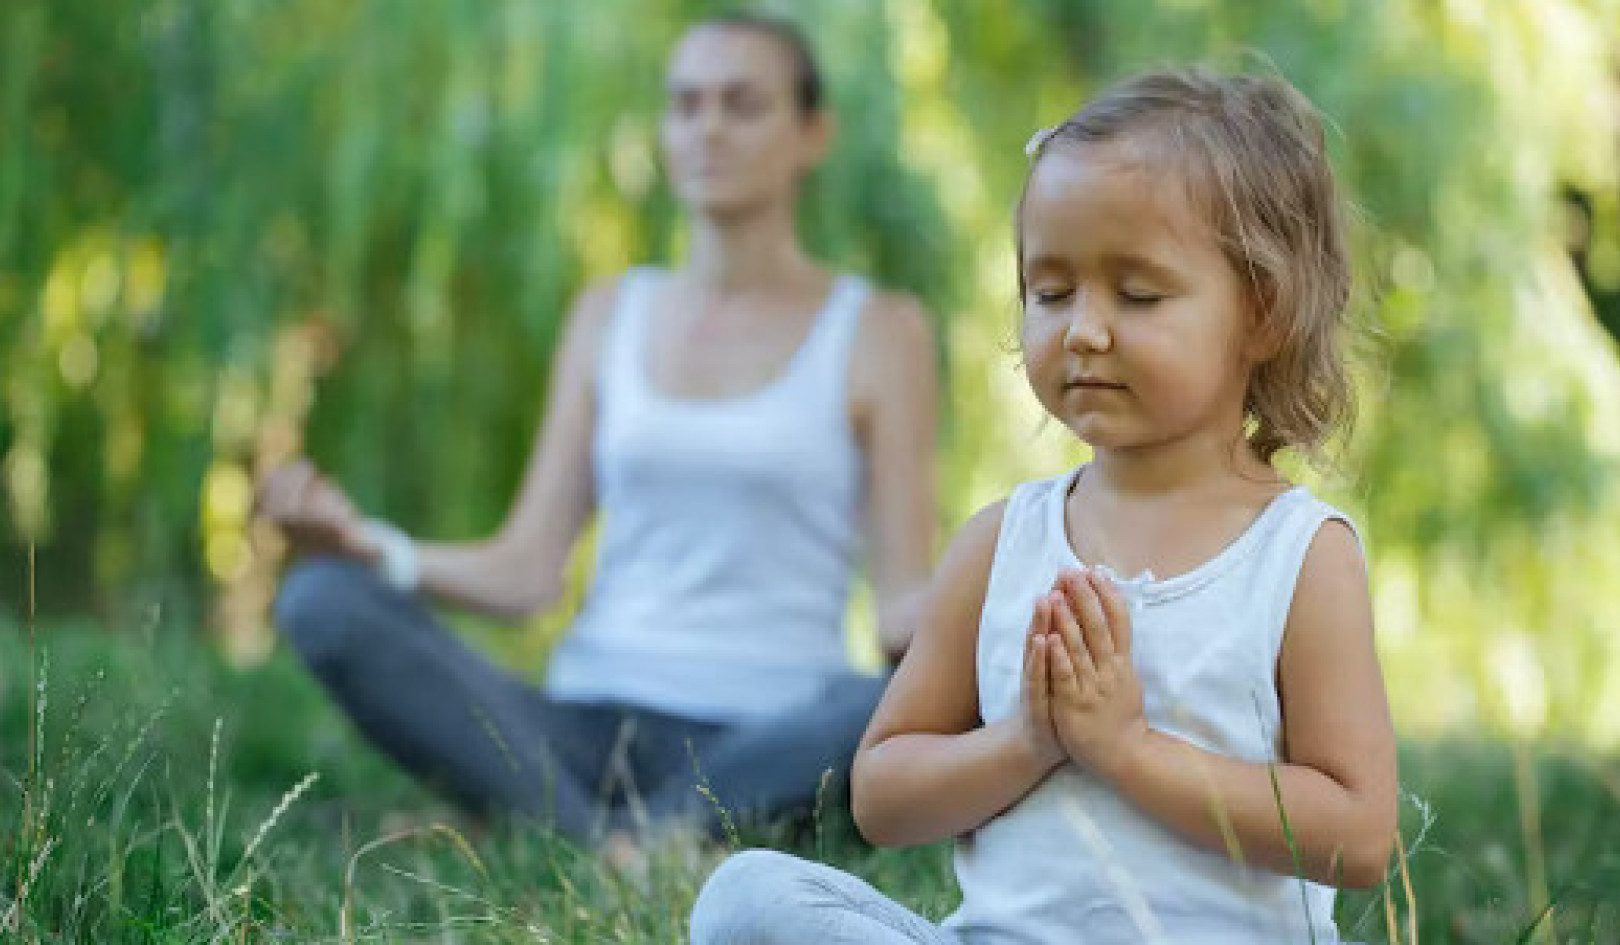 La meditación tiene potencial para tratar a niños que sufren traumas, diagnósticos difíciles o estrés